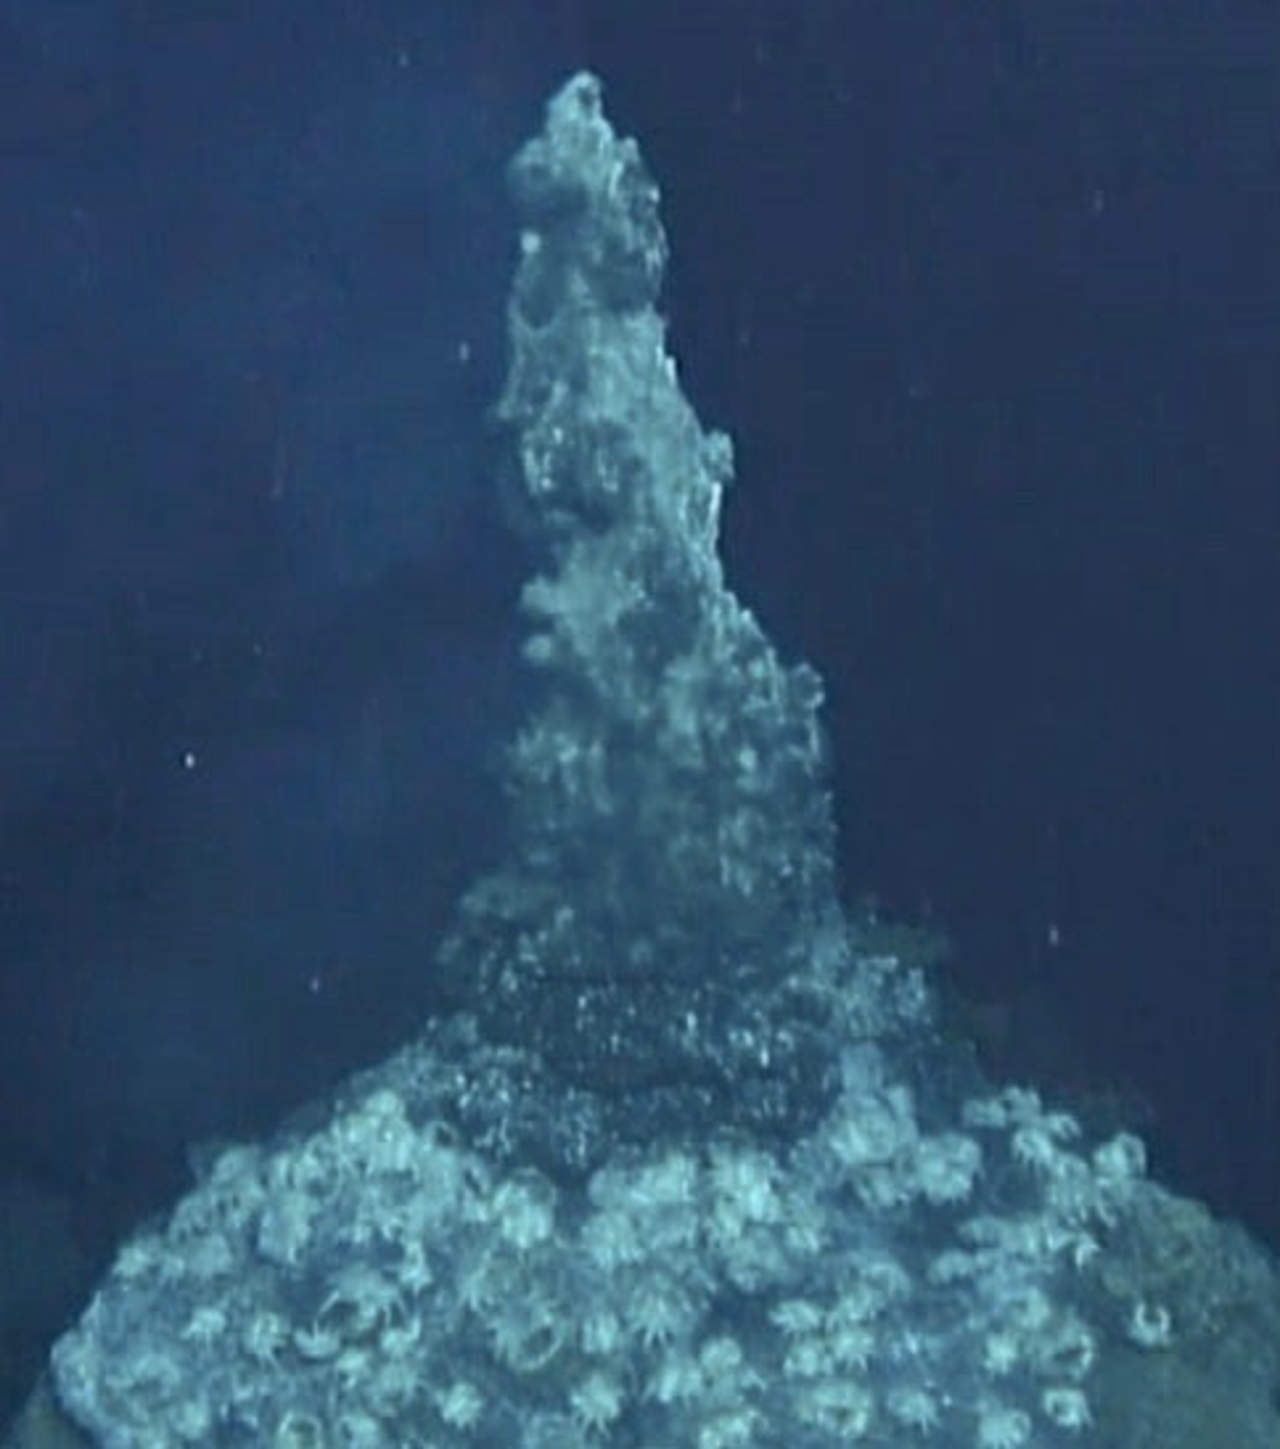 La teoría que afirma que la vida en la Tierra tiene su origen en el mar profundo, cerca de fuentes hidrotermales, ya existía, pero esta investigación afirma que la electricidad generada en torno a ellas jugó un papel fundamental. (EFE)